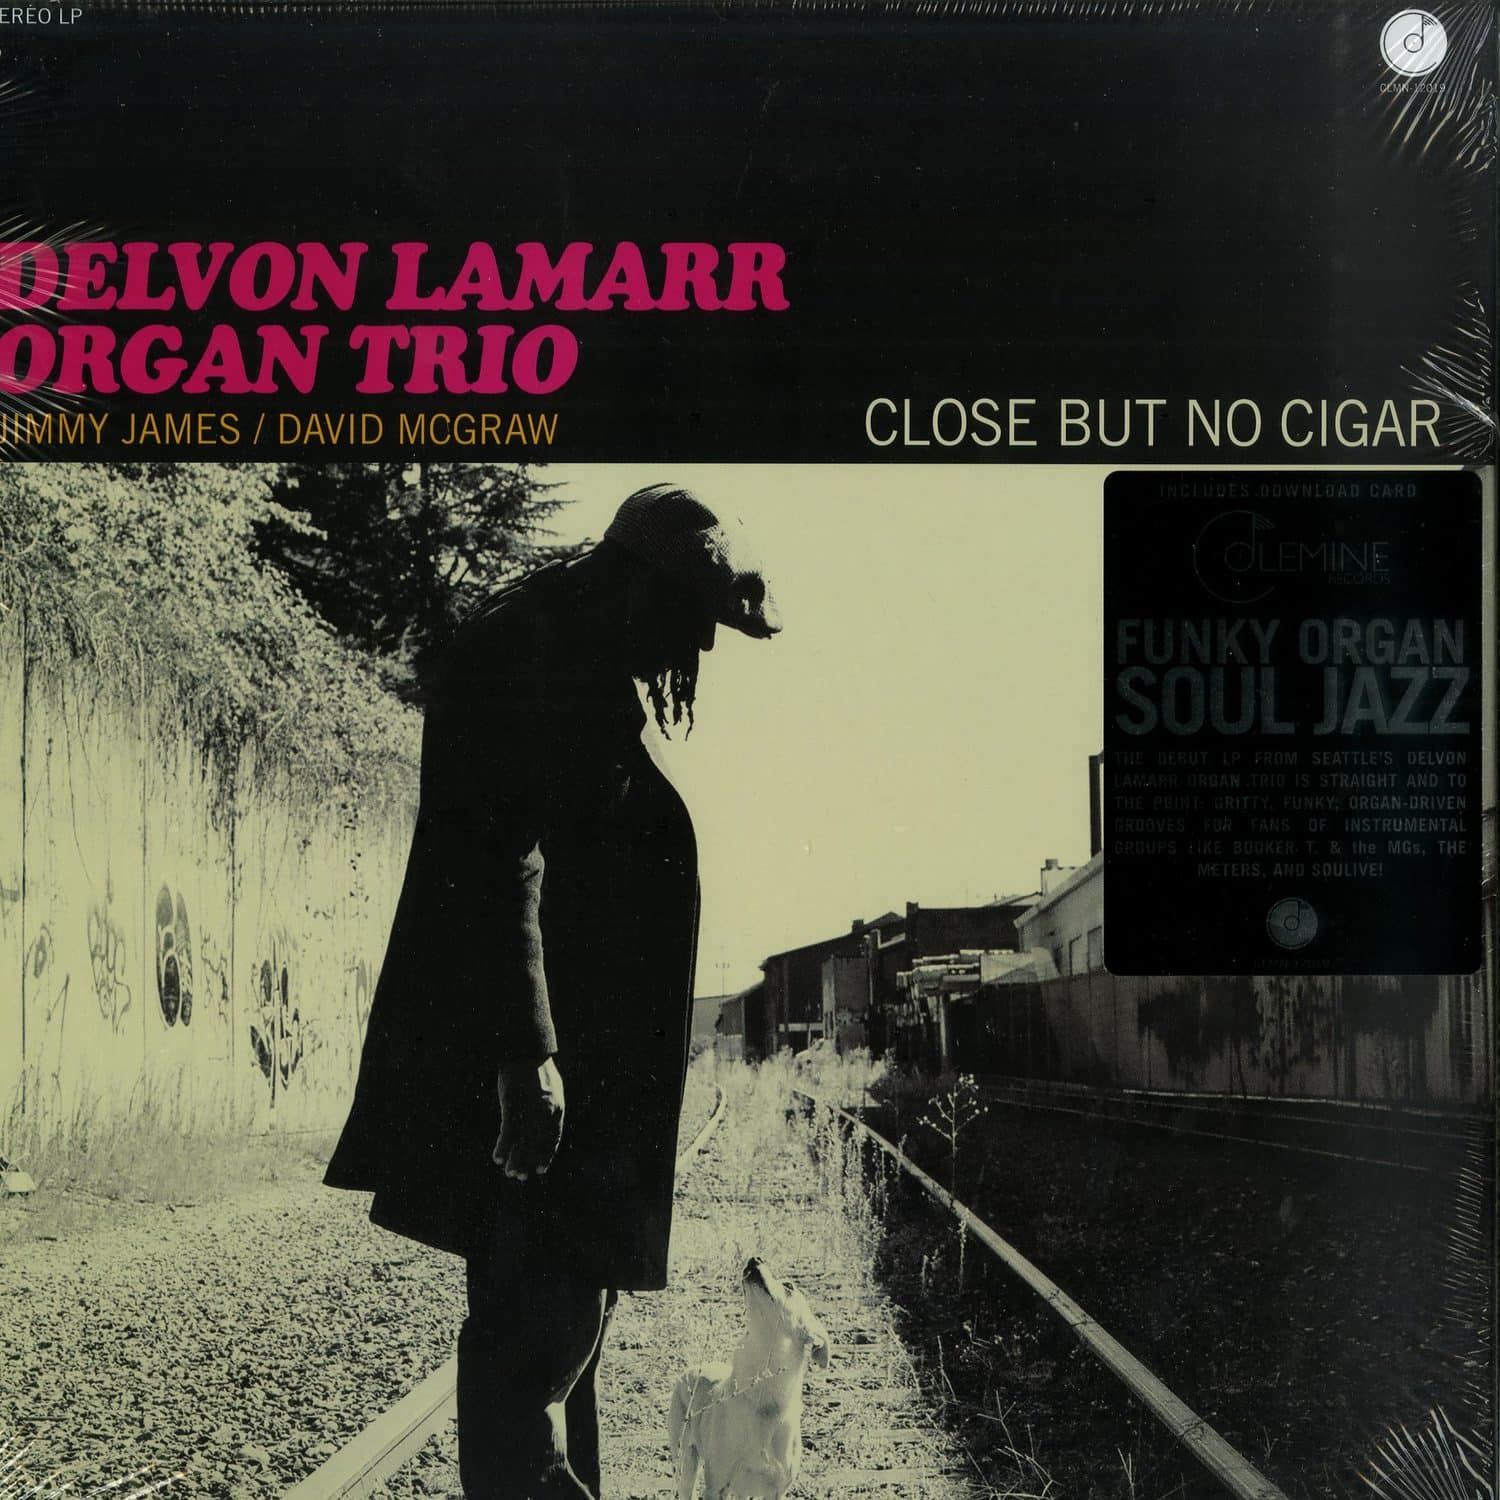 Delvon Lamarr Organ Trio - CLOSE BUT NO CIGAR 